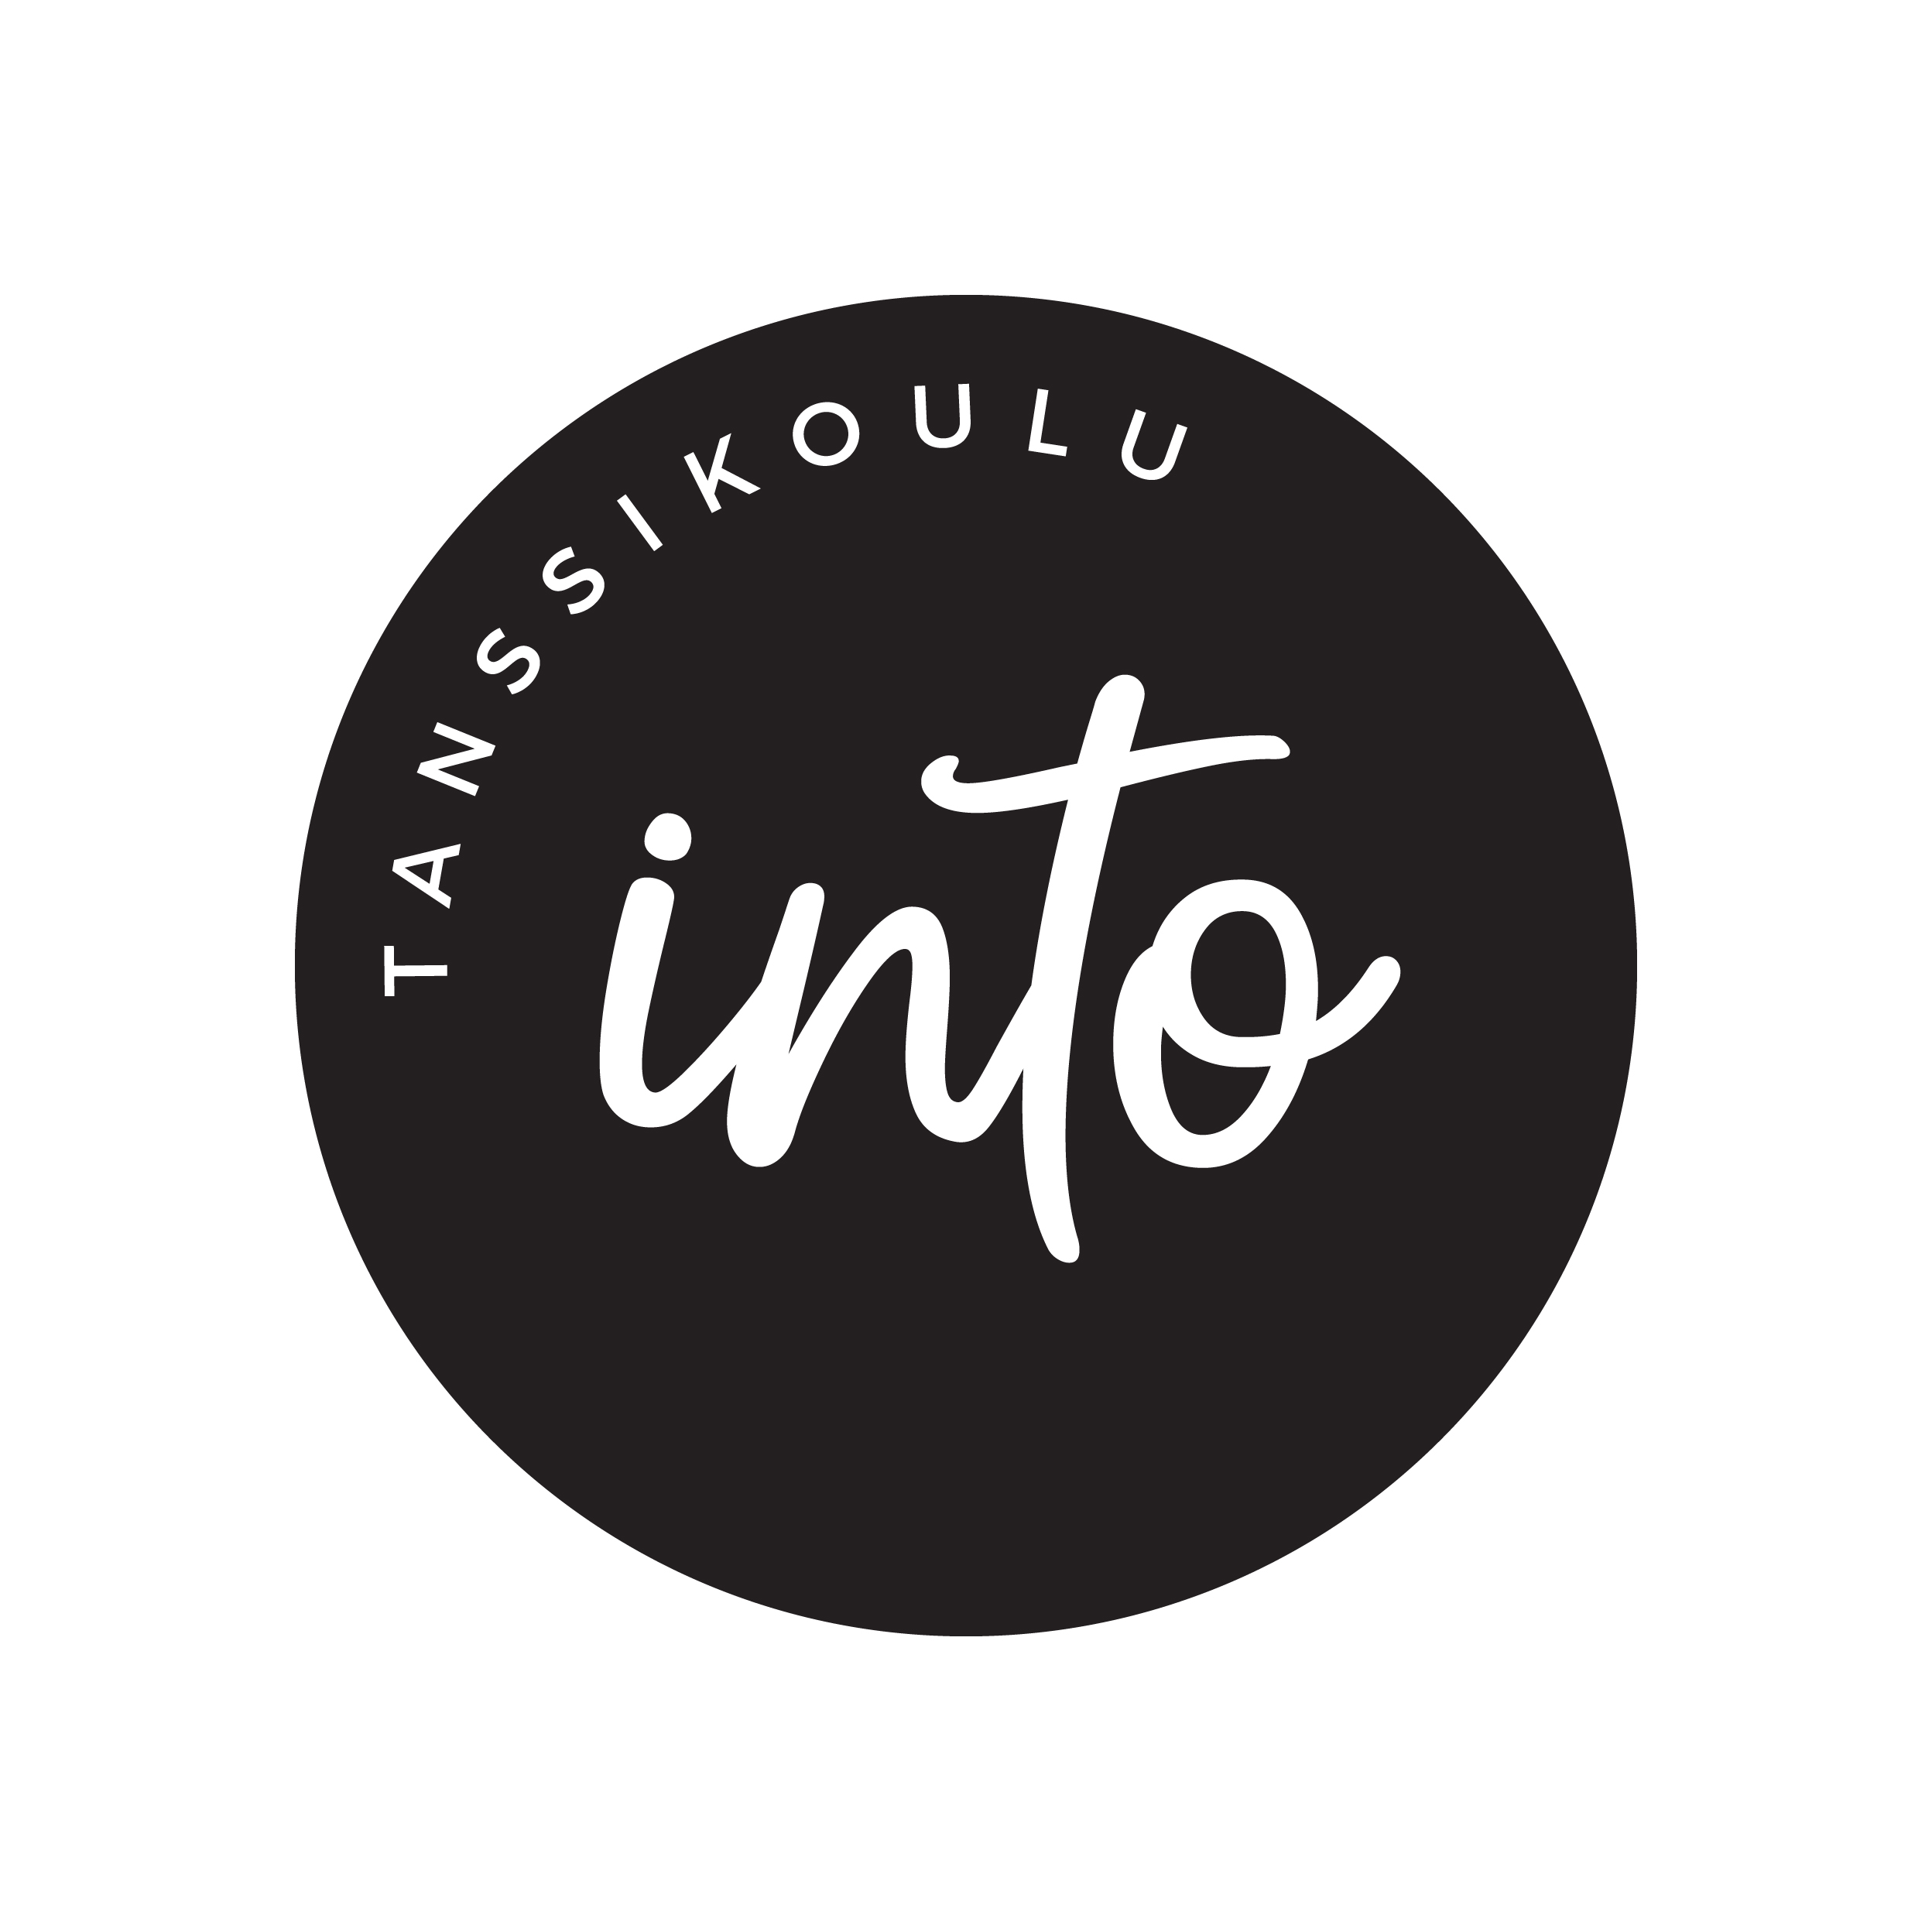 tanssikoulu_into_logo_mustavalkoinen.jpg (566 KB)